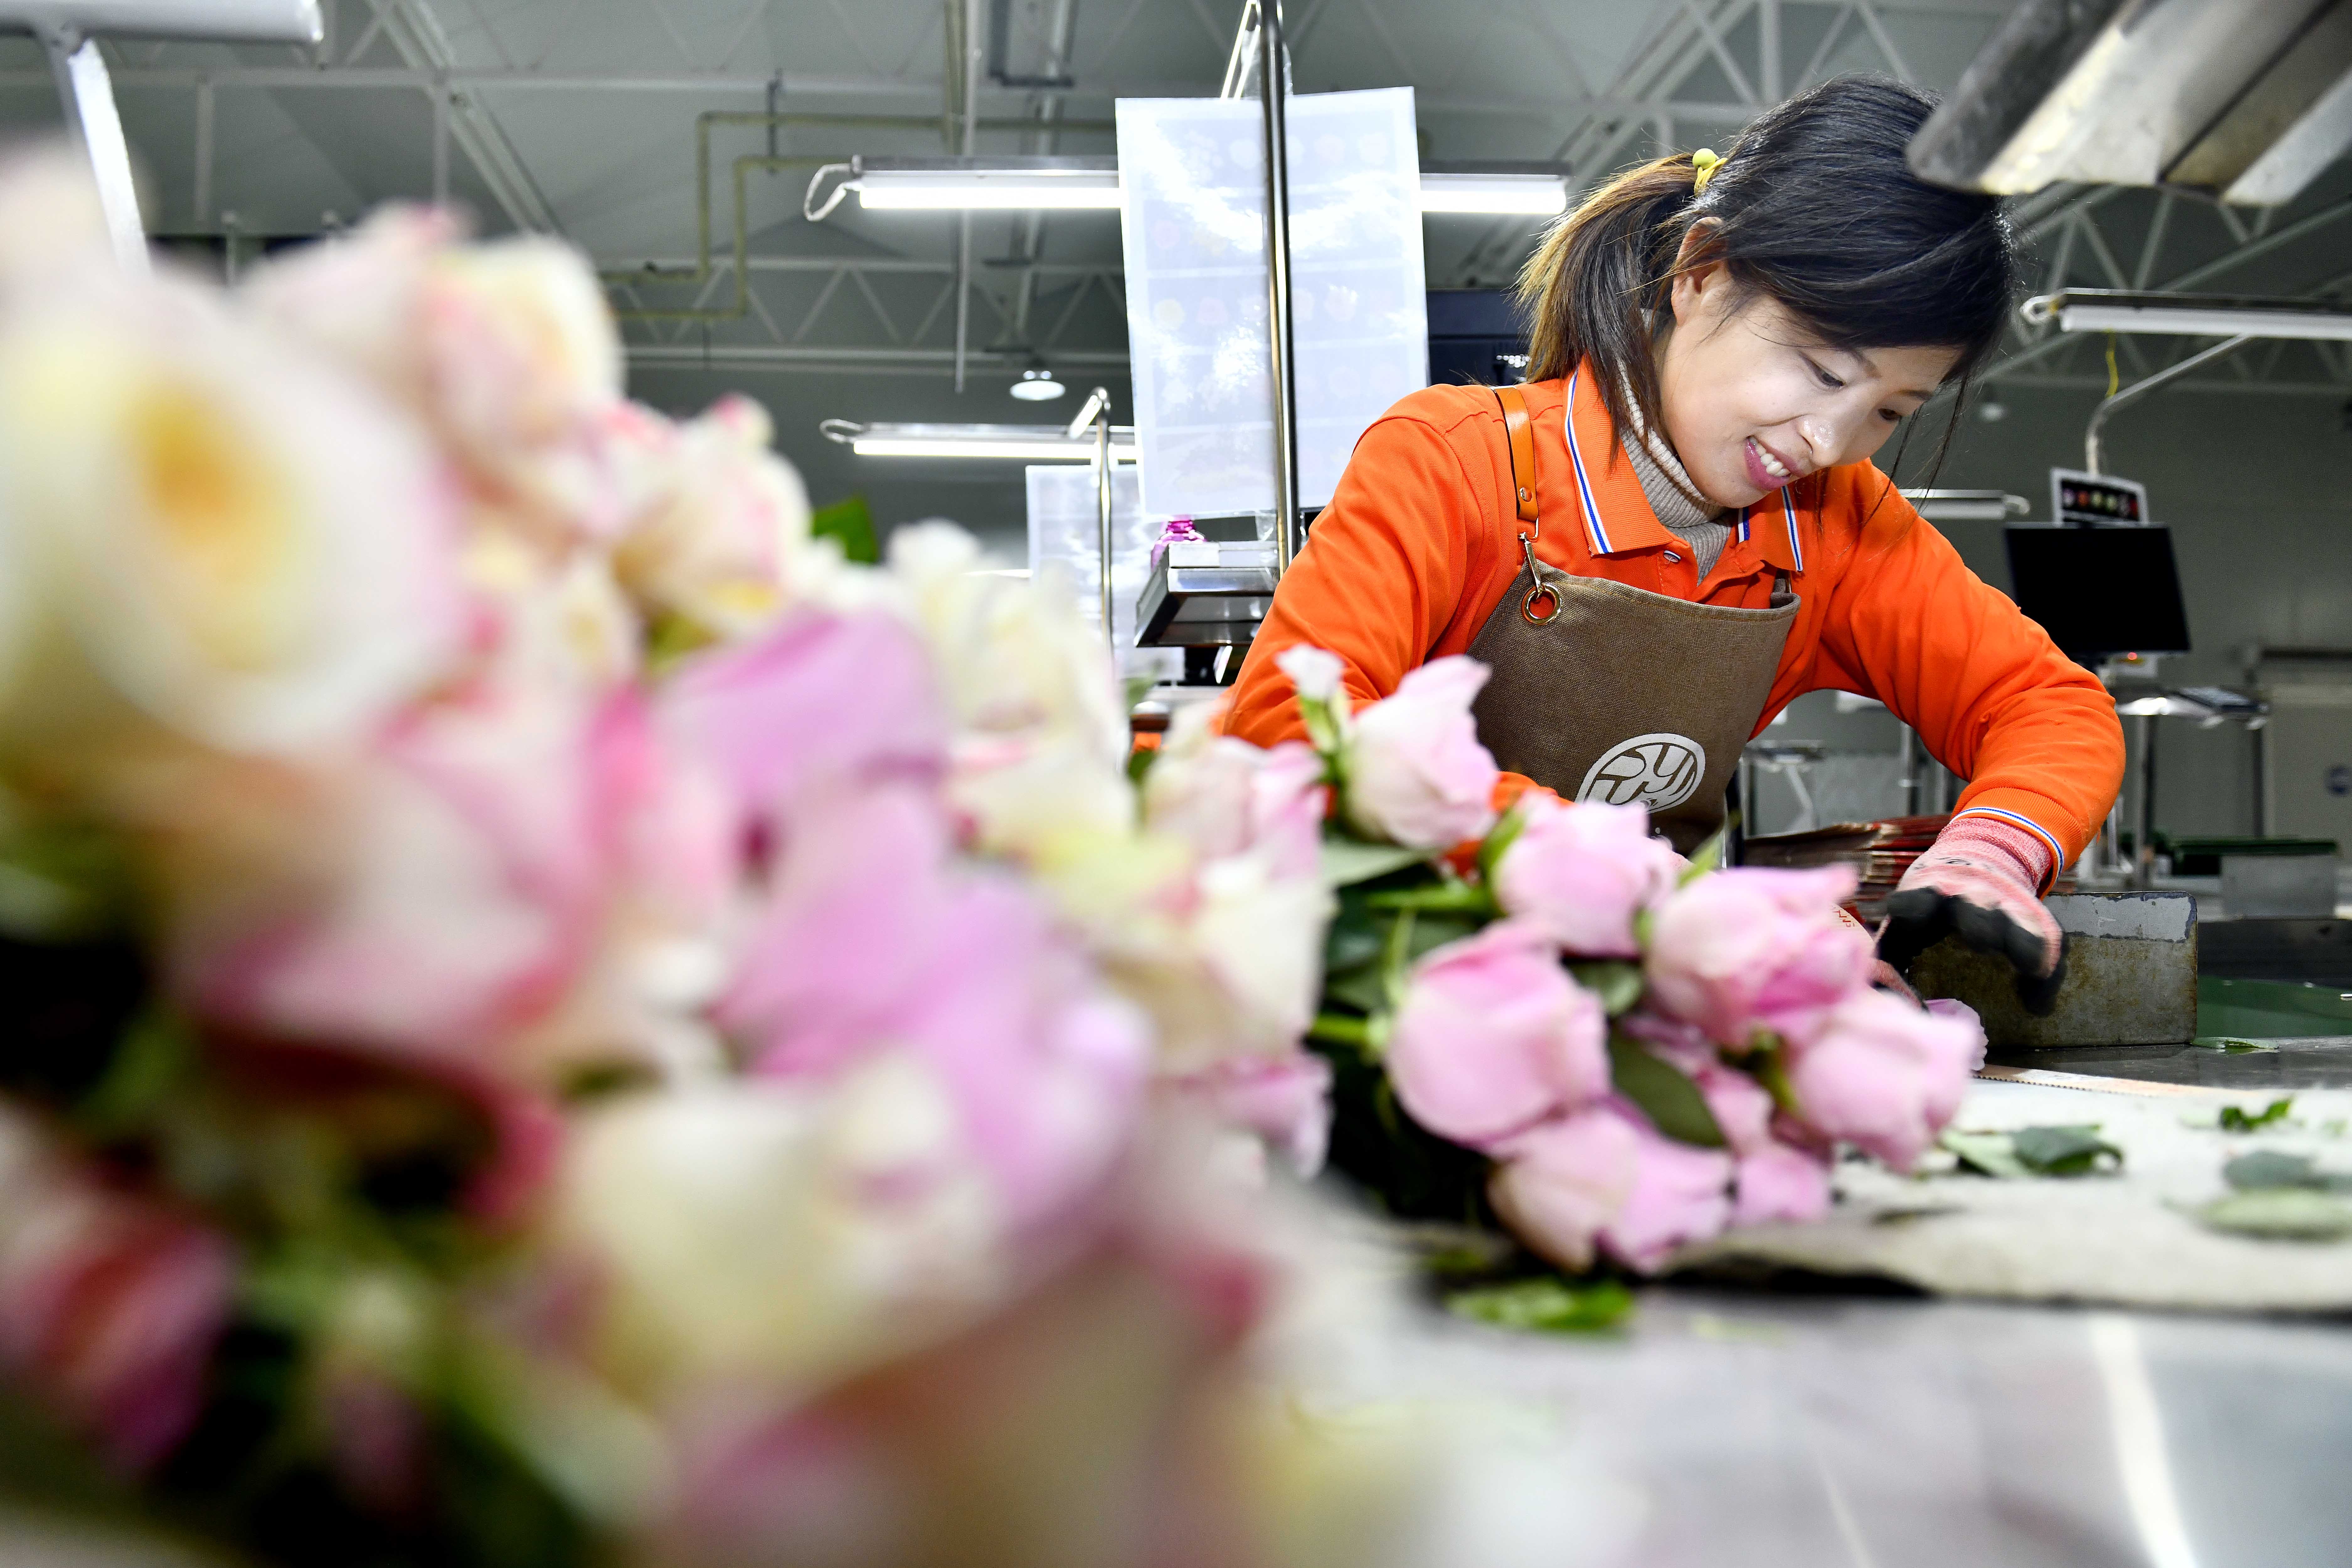 在山东省莒县招贤曲坊现代农业产业园玫瑰基地，工作人员在包装玫瑰。新华社记者 郭绪雷 摄

